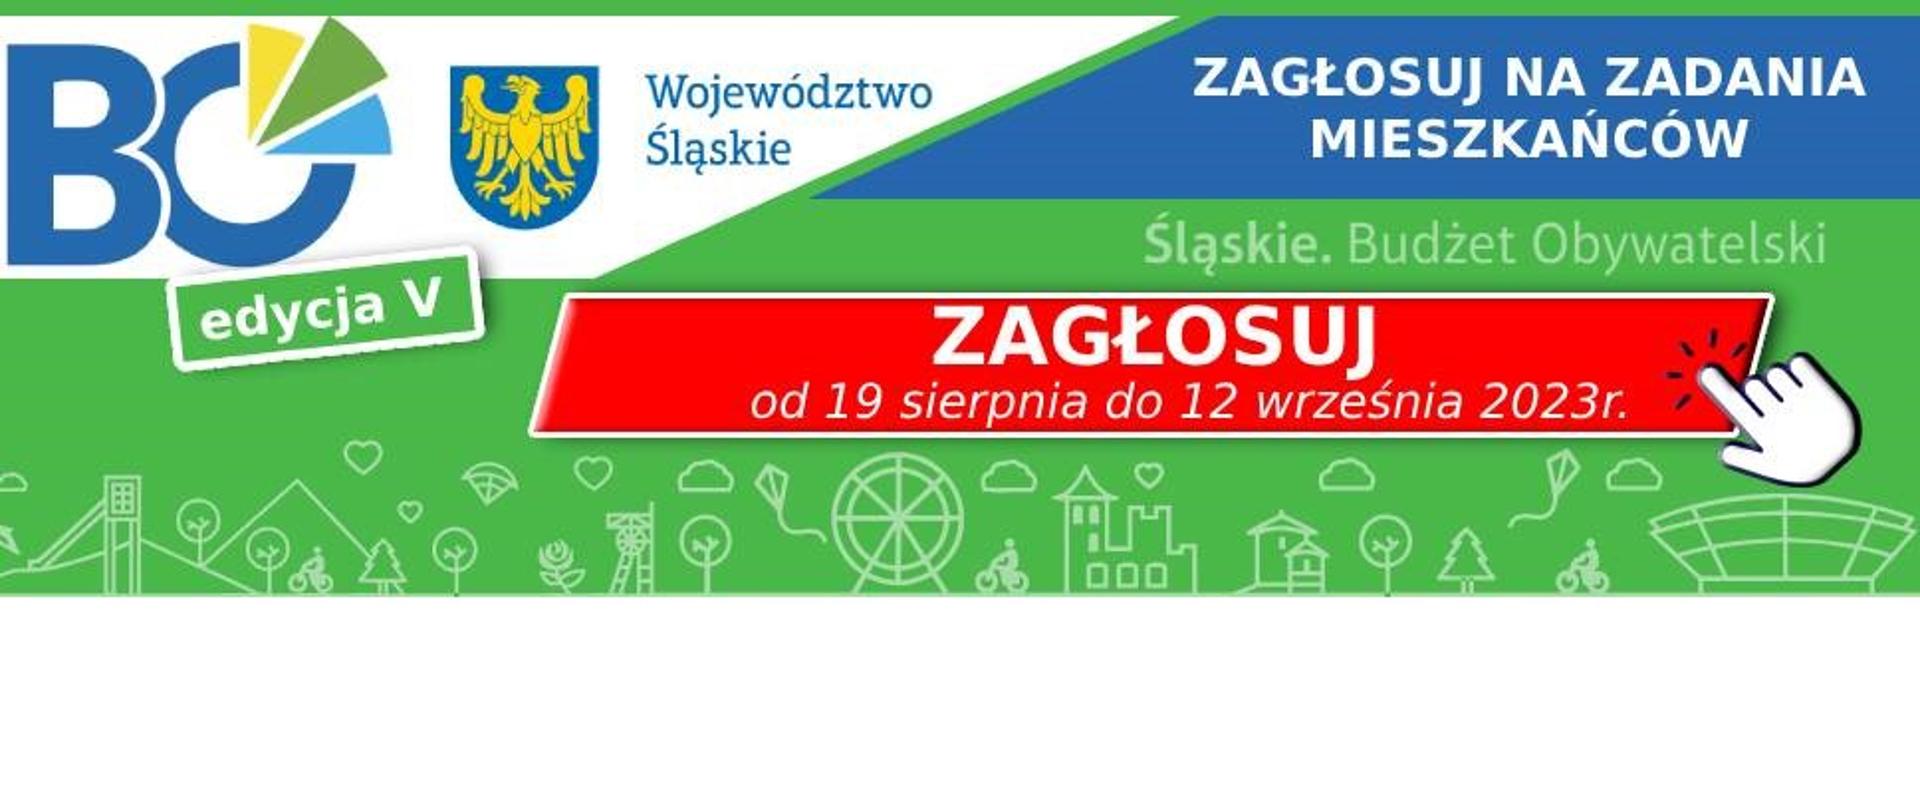 V edycja Marszałkowskiego Budżetu Obywatelskiego Województwa Śląskiego. Zagłosuj na zadania mieszkańców od 19 sierpnia do 12 września 2023 roku